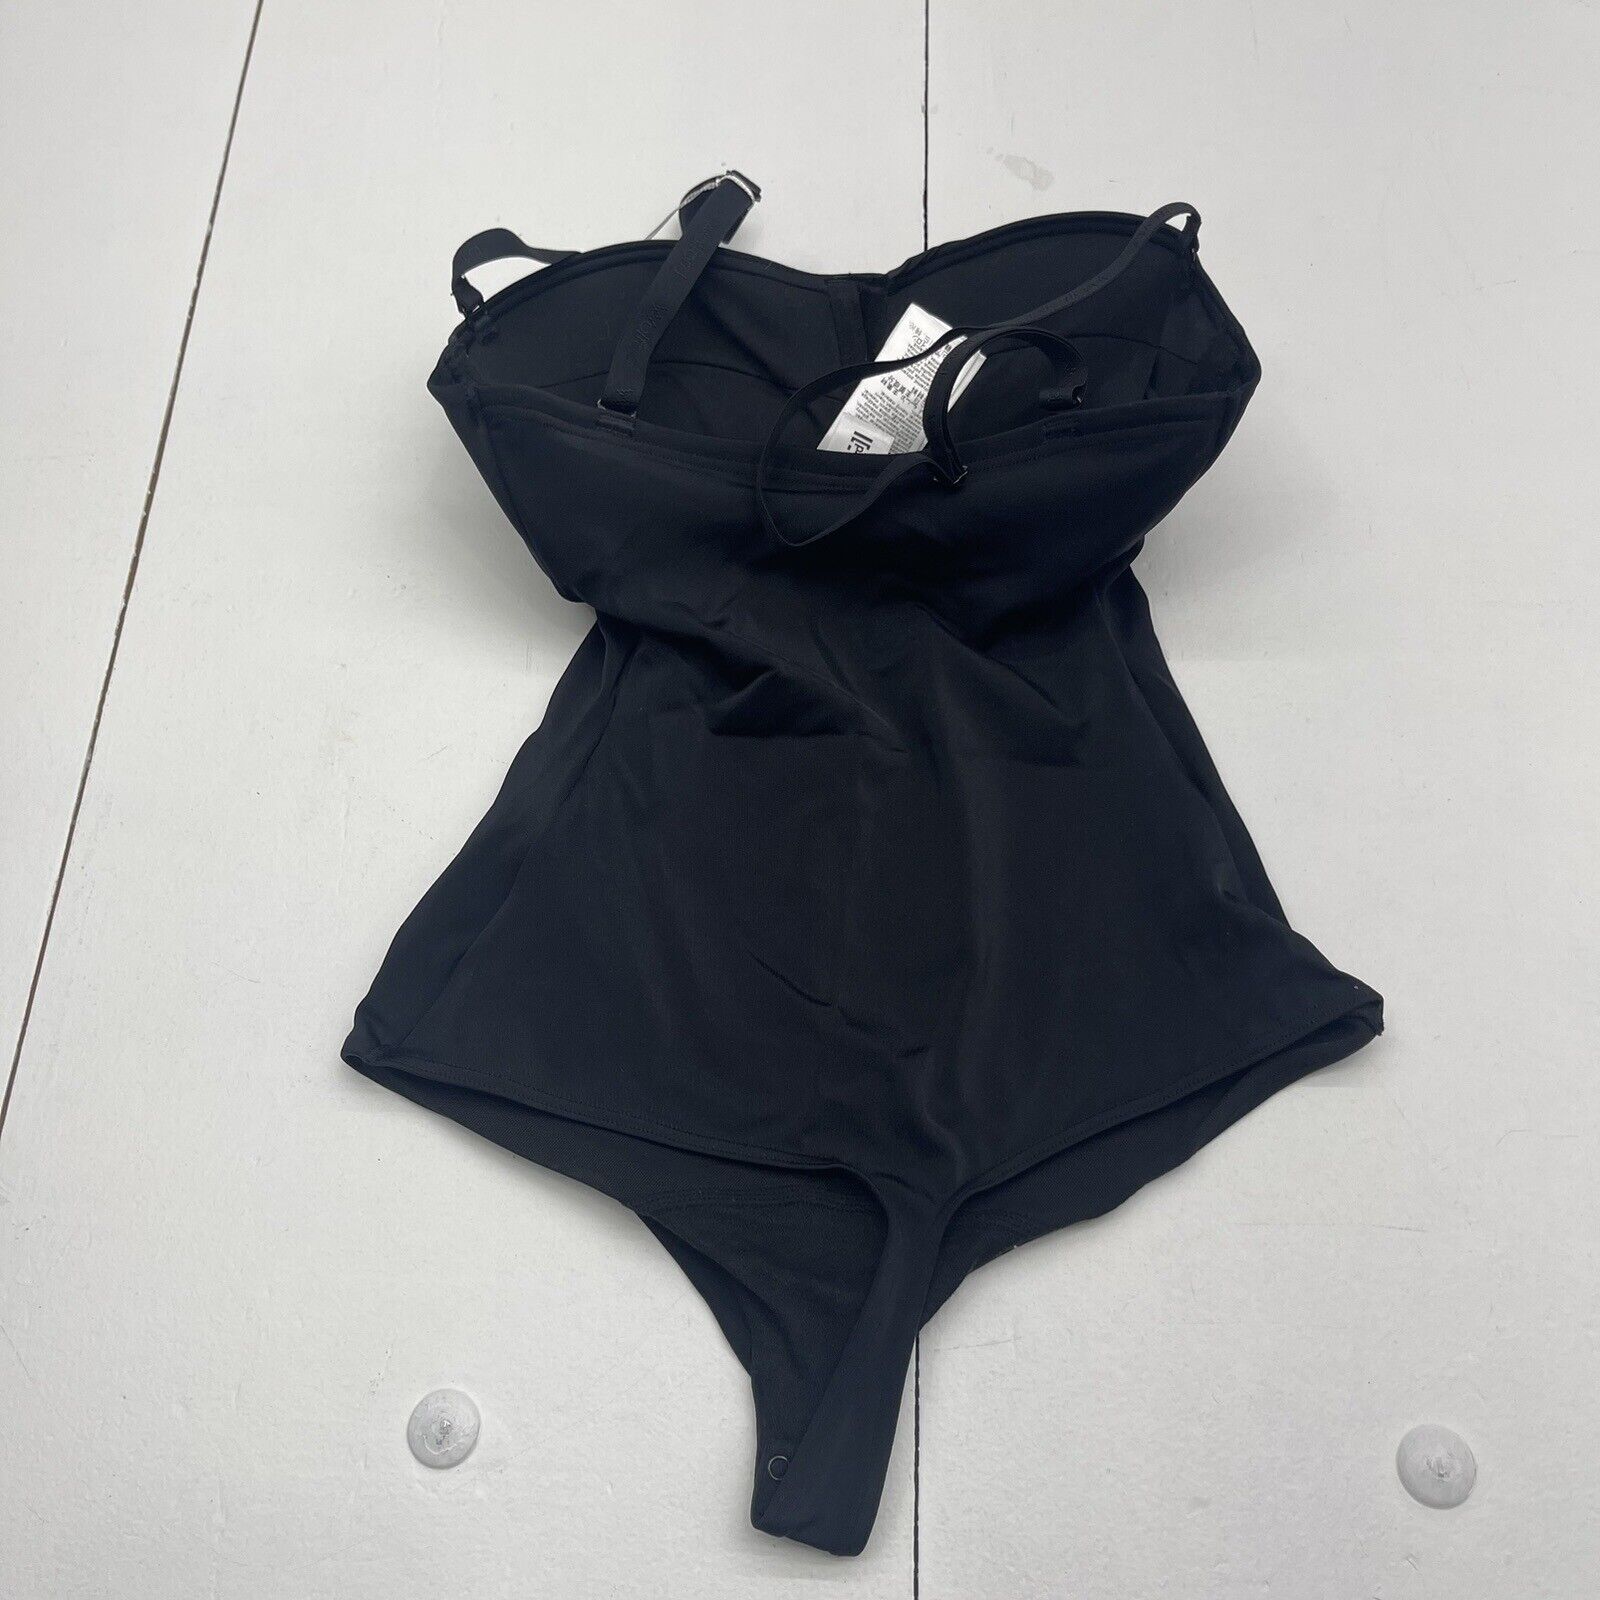 Wolford Mat De Luxe Form Black Bodysuit Shapewear Women's XSC New $215 -  beyond exchange